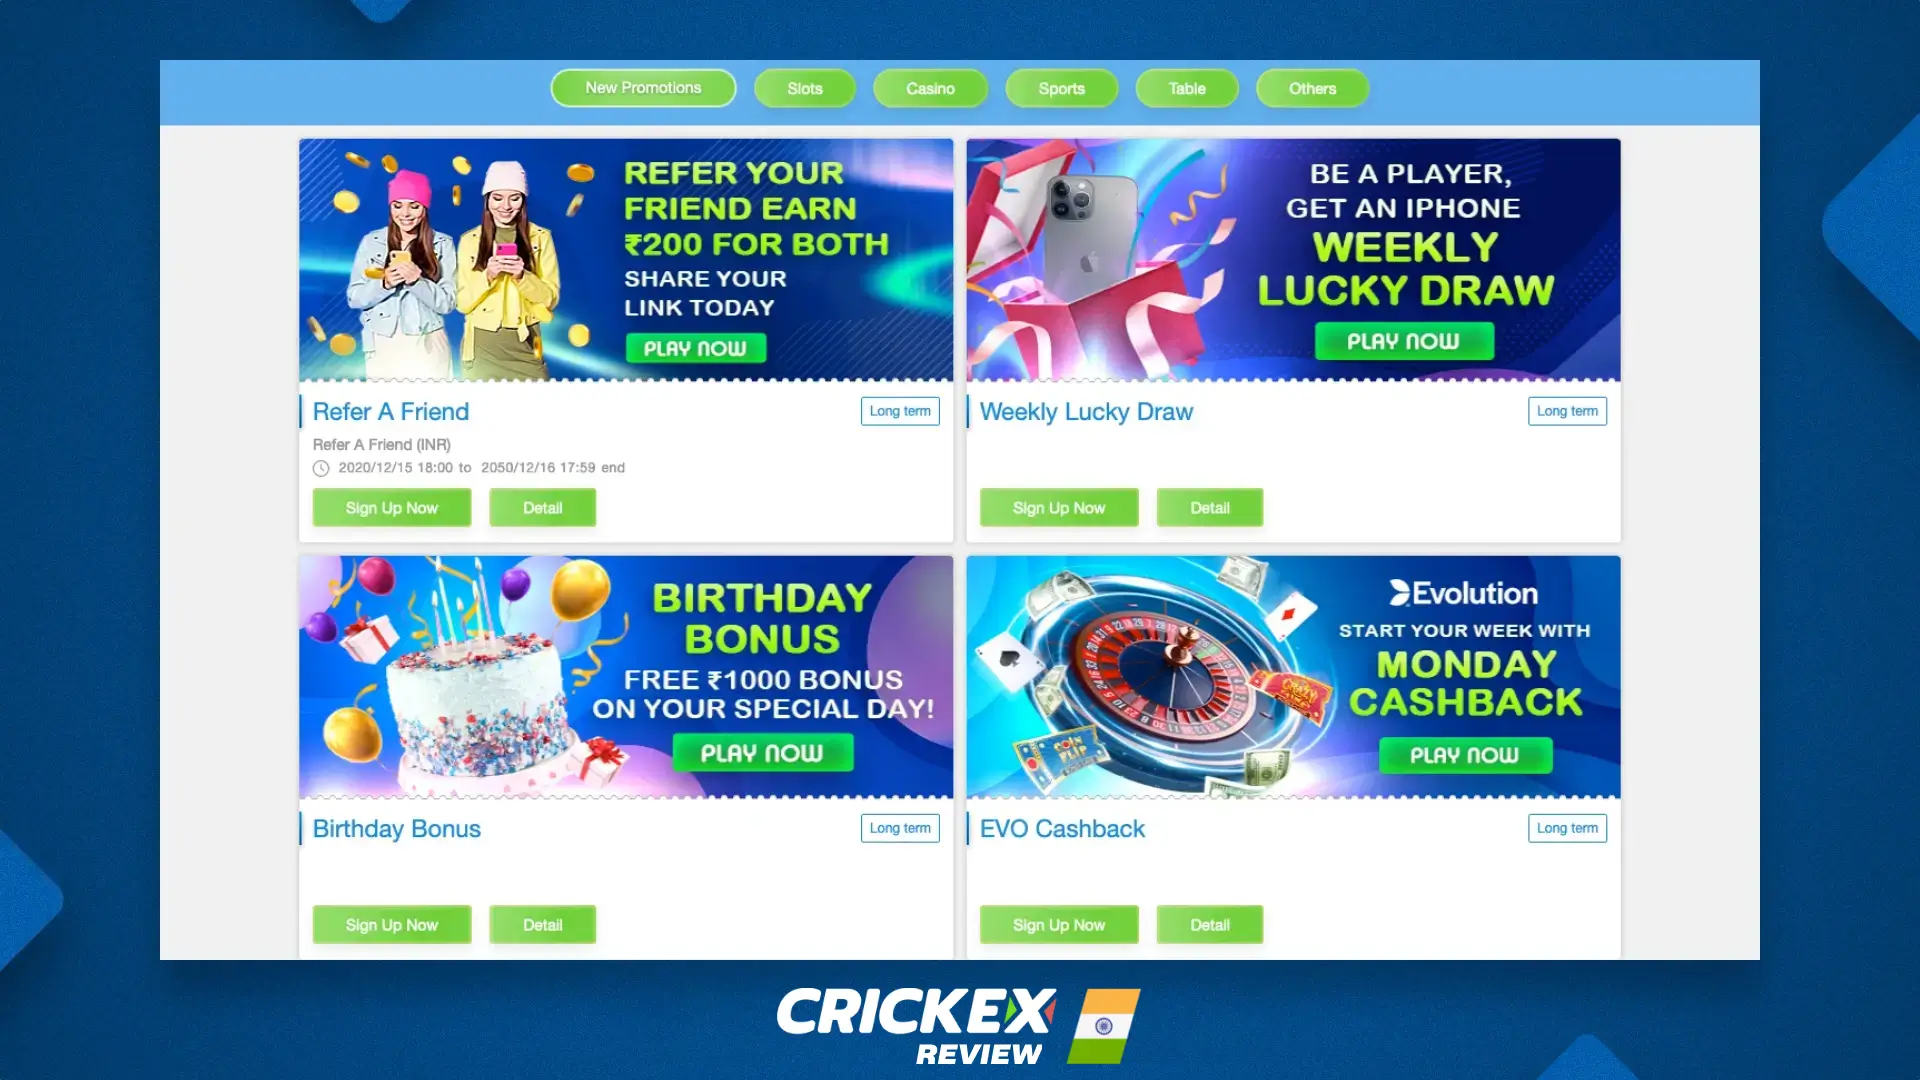 भारत के खिलाड़ियों के लिए उपलब्ध Crickex बोनस और प्रमोशन